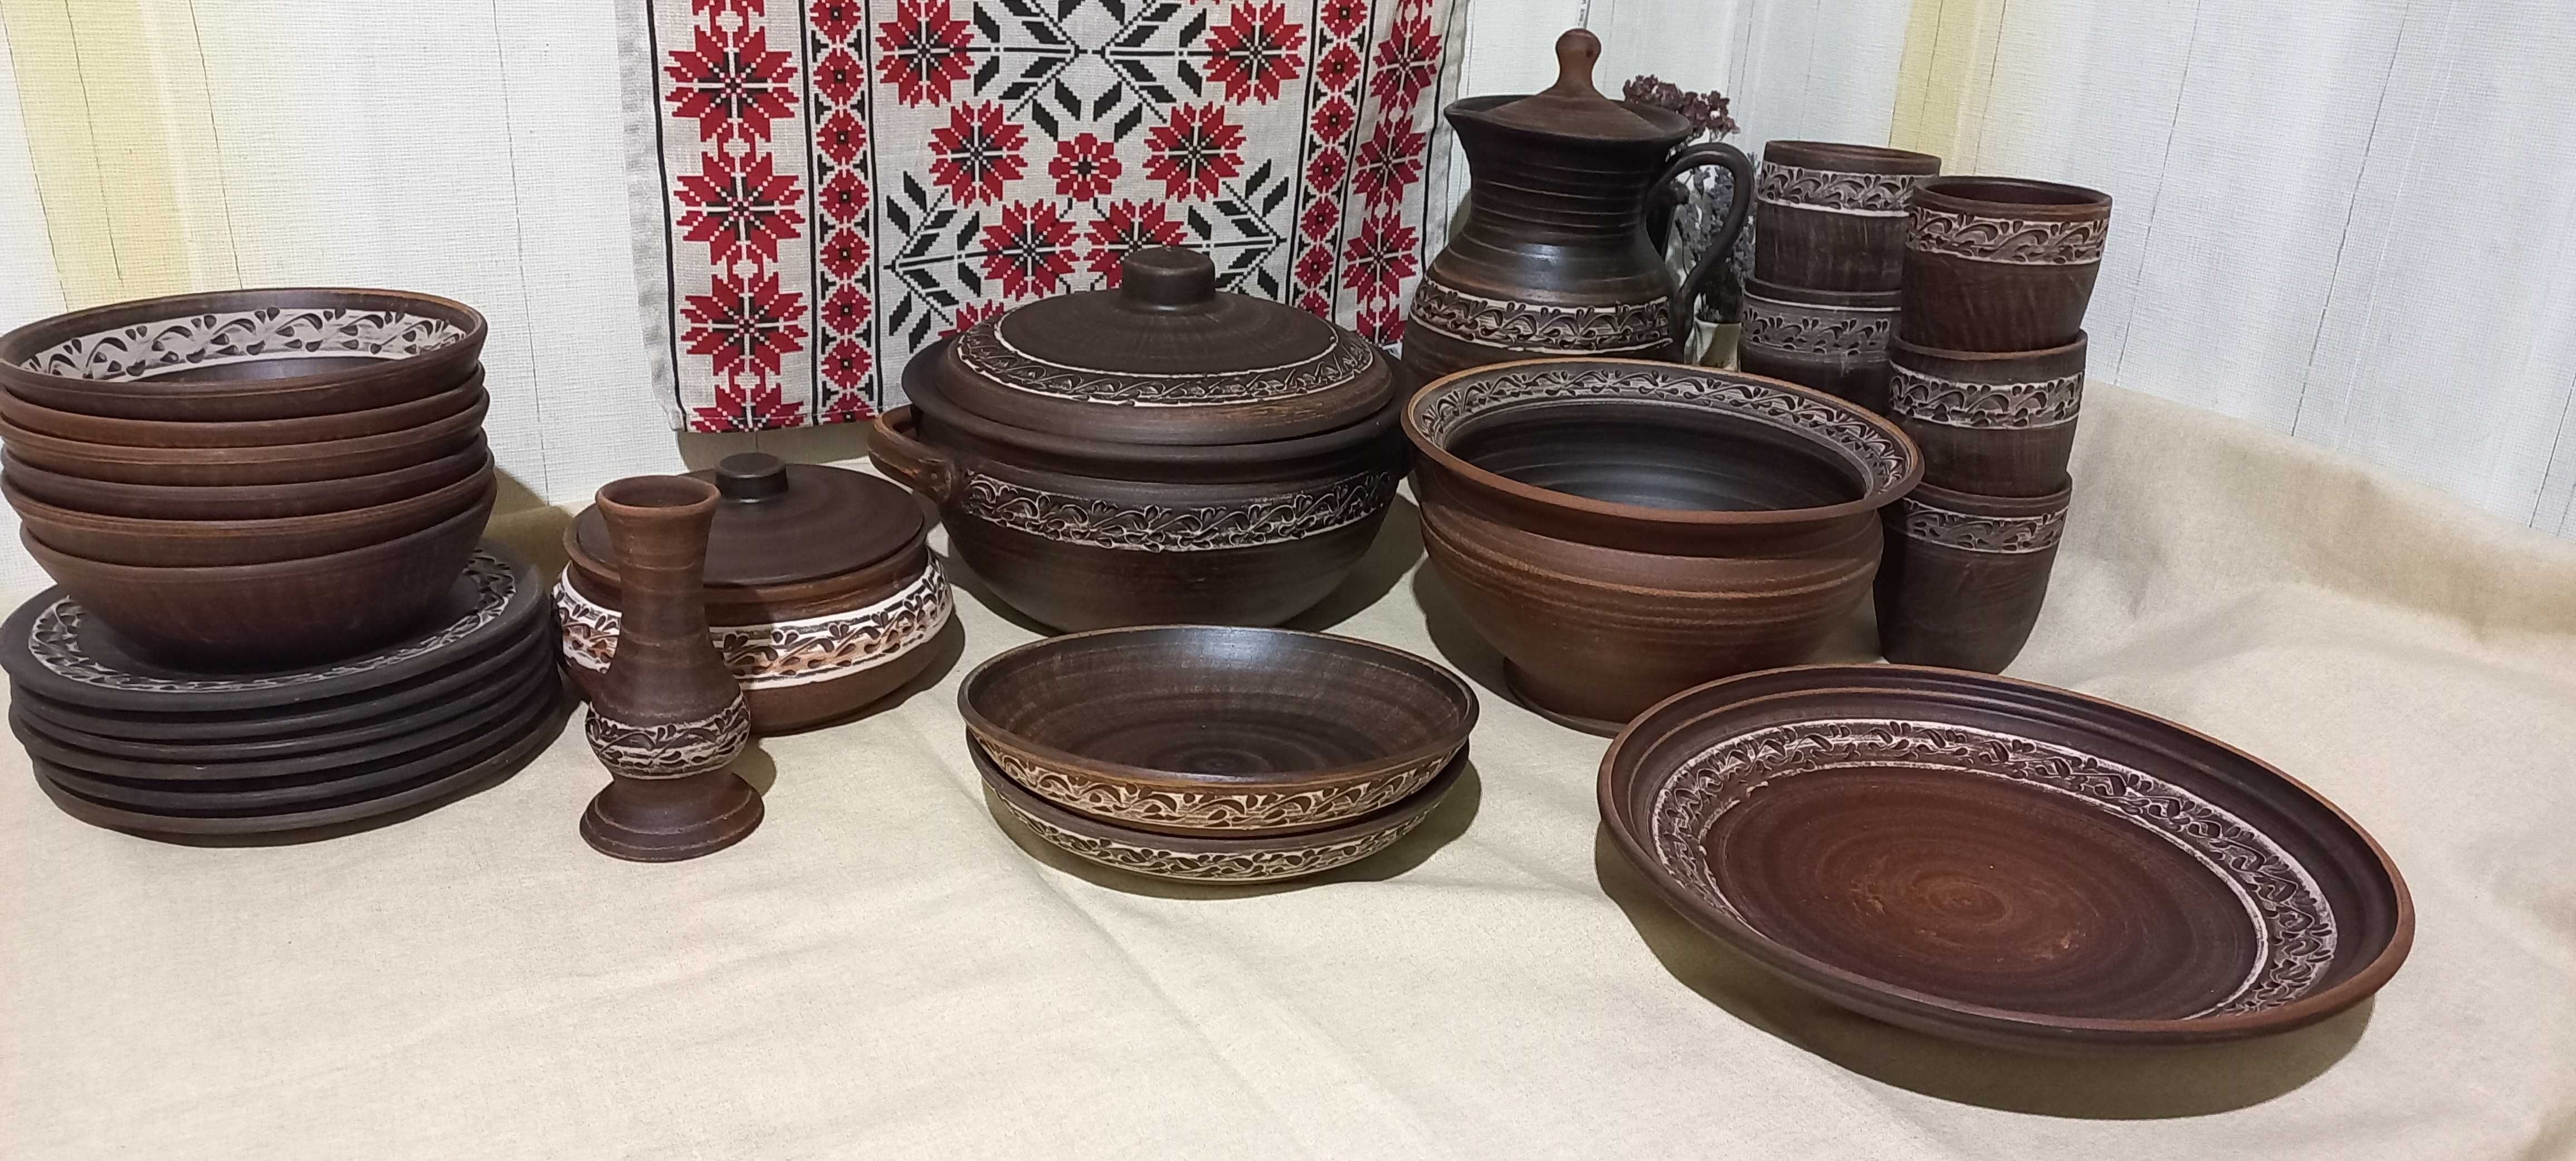 Глиняний посуд в наборах та окремо